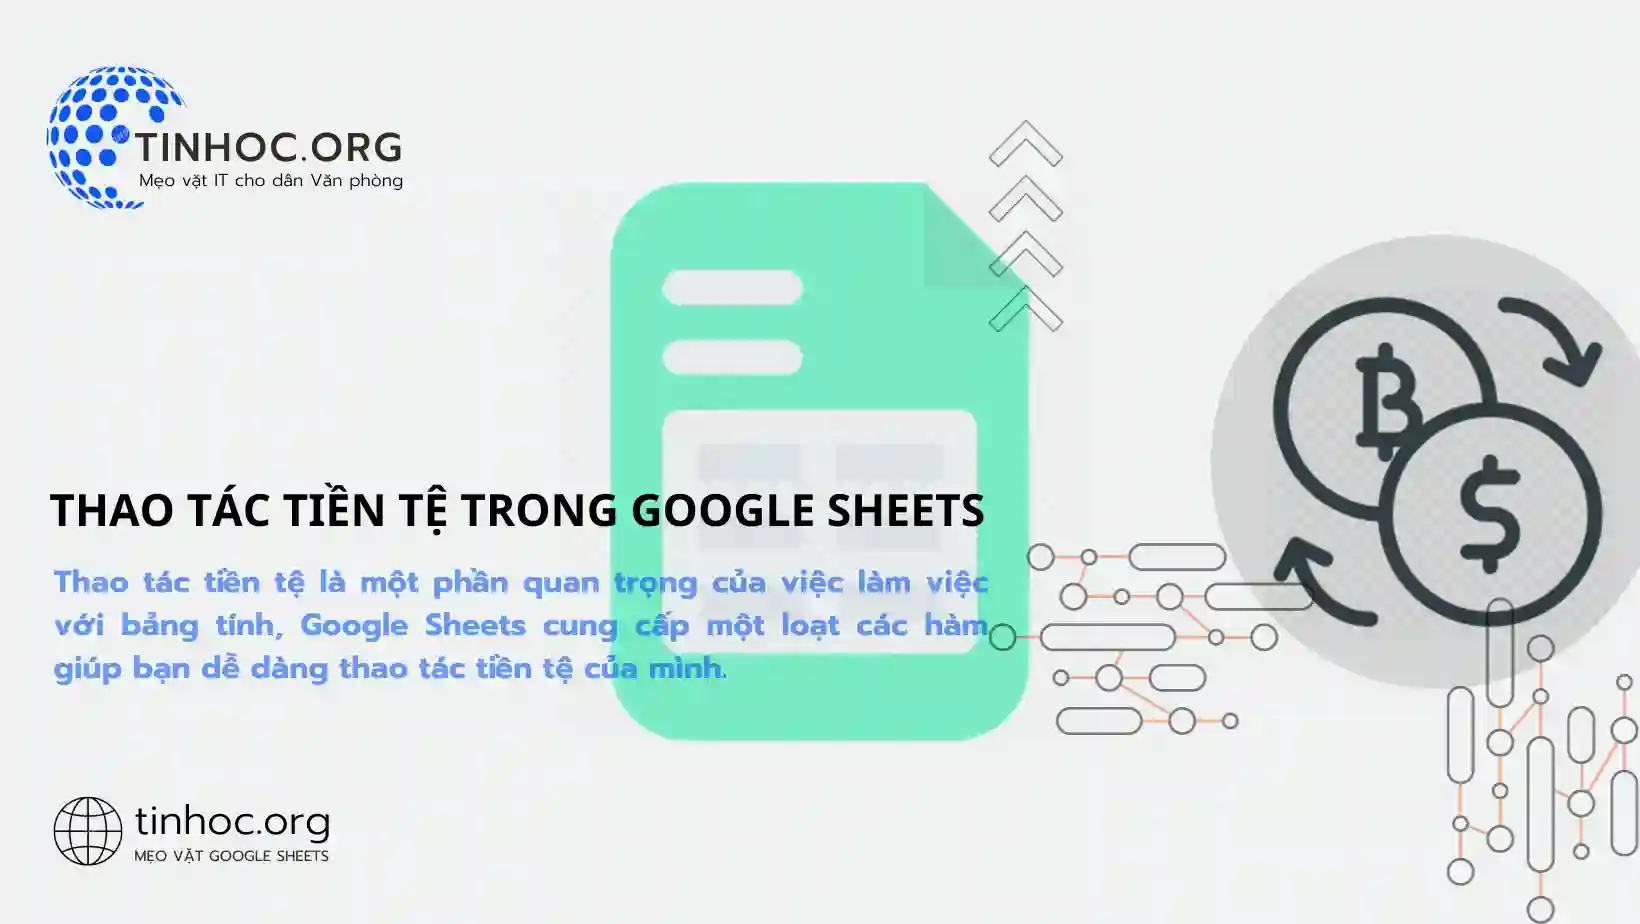 Thao tác tiền tệ là một phần quan trọng của việc làm việc với bảng tính, Google Sheets cung cấp một loạt các hàm giúp bạn dễ dàng thao tác tiền tệ của mình.